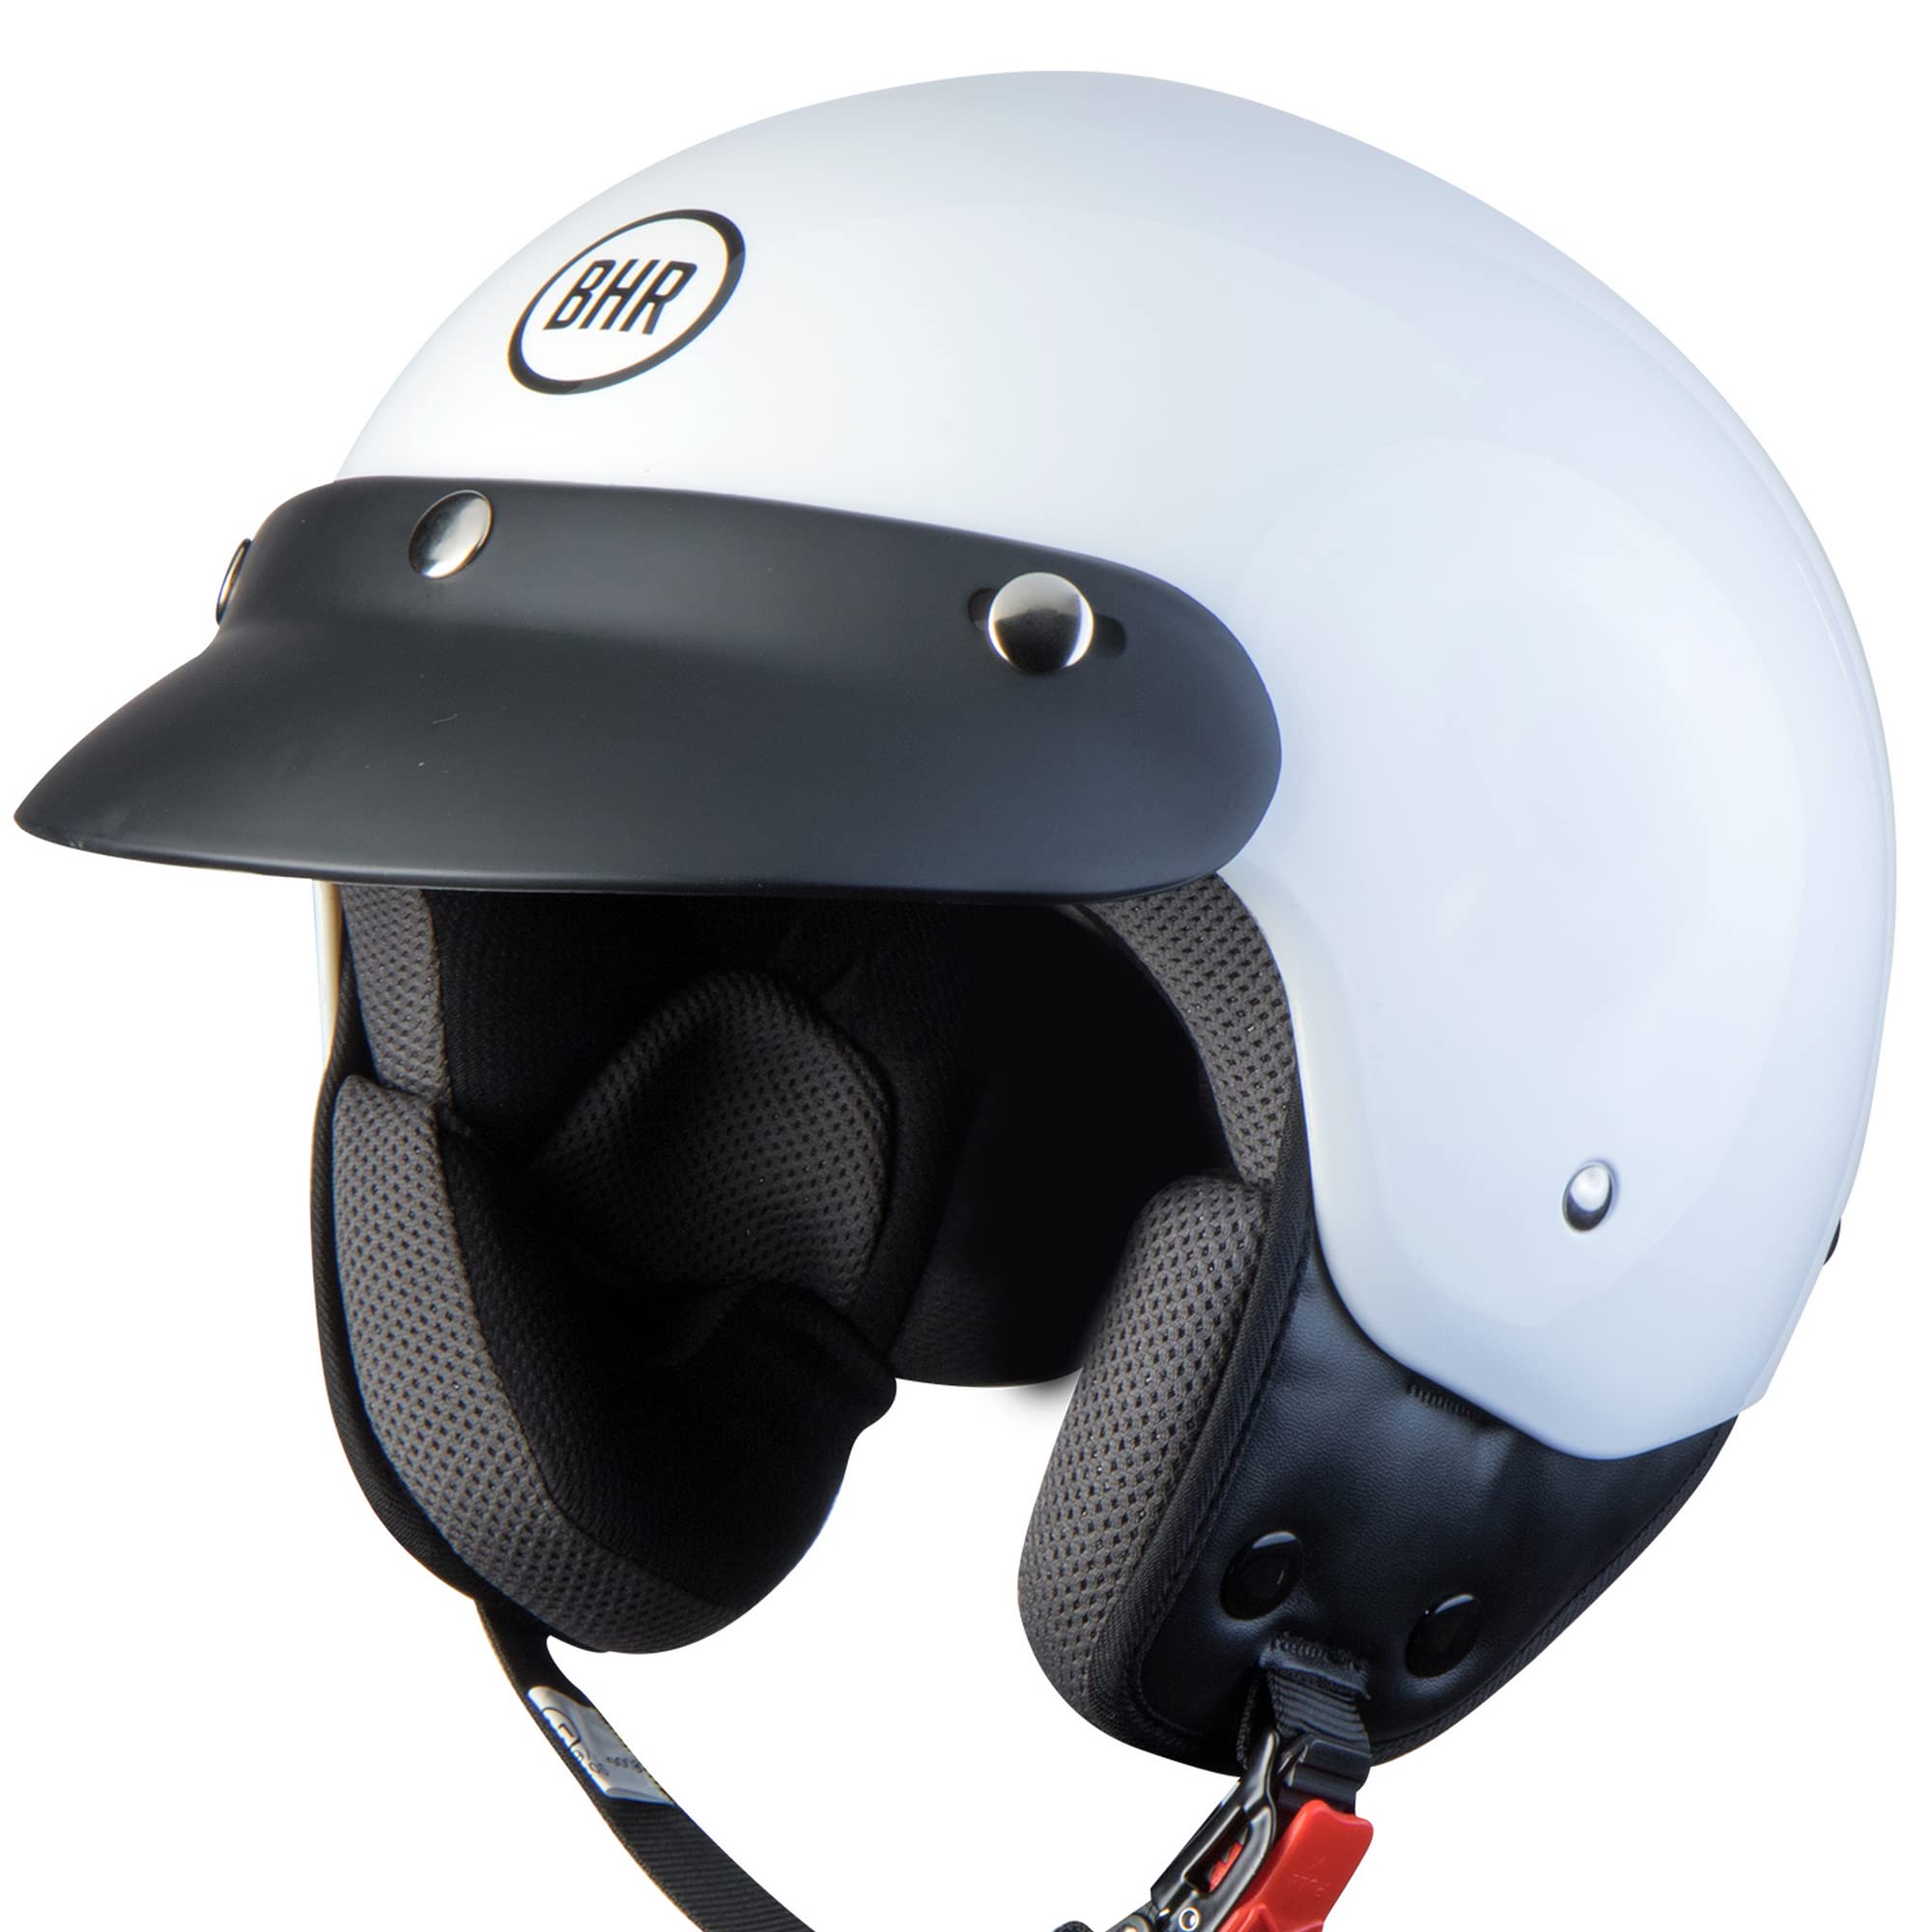 BHR Demi-Jet Helm 803 SIMPLY, Praktischer Rollerhelm mit ECE-Zulassung, Motorrad-Jet-Helm mit abnehmbarem Gesichtspolster, WEISS, M